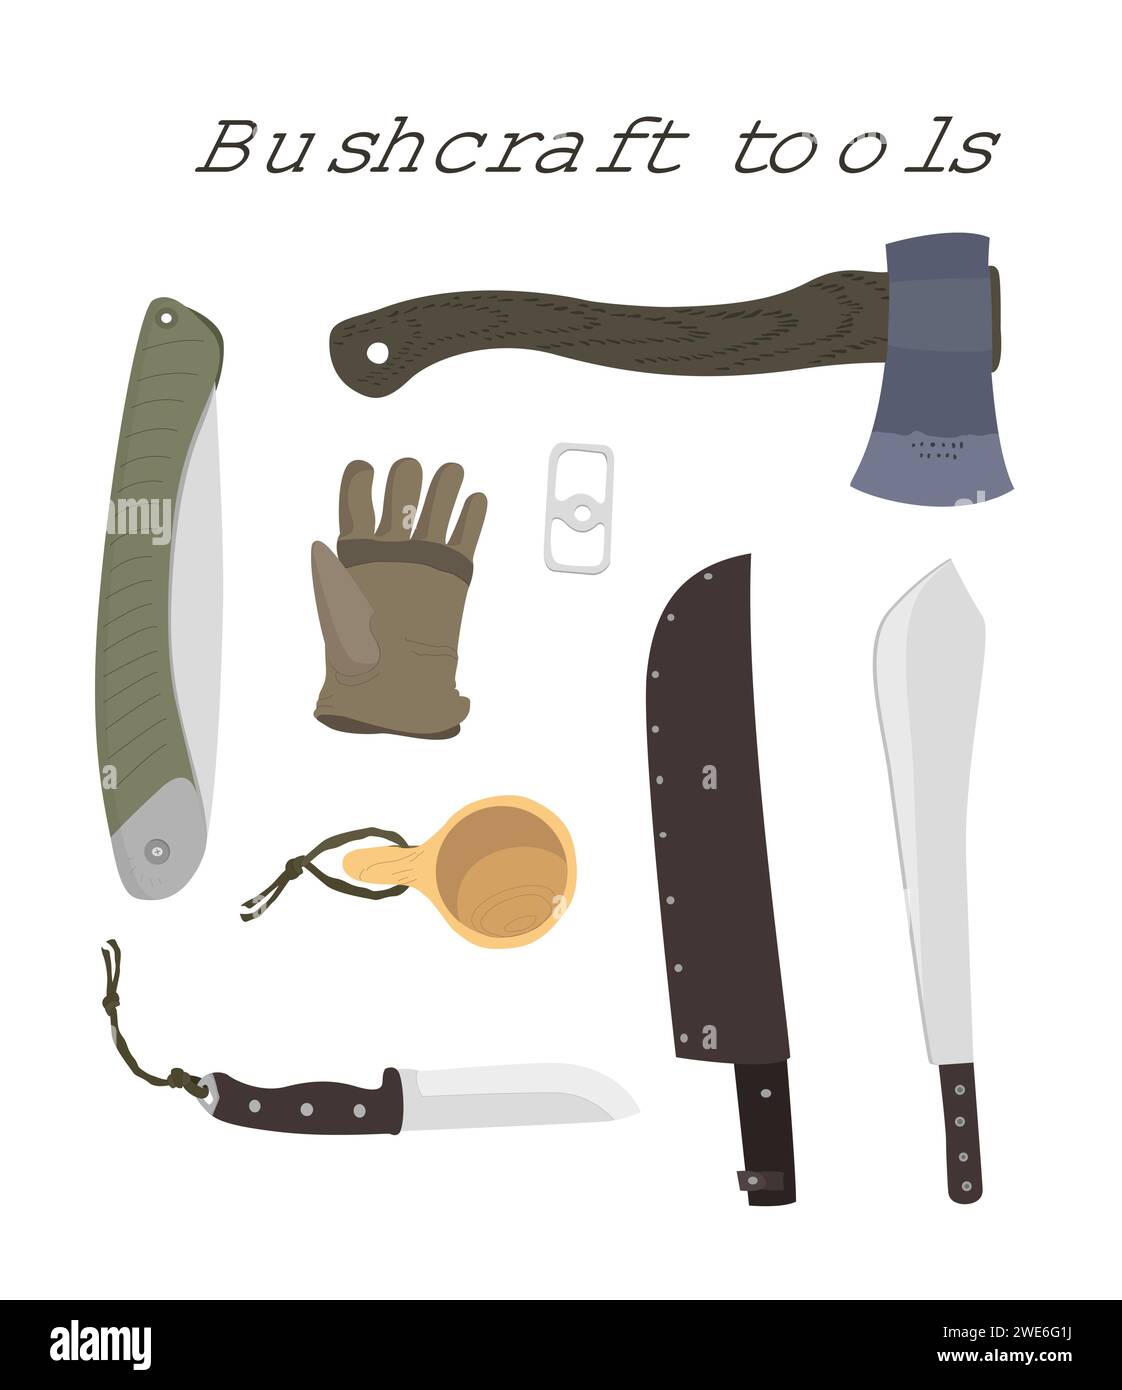 Bushcraft-Werkzeuge: Säge, Messer, Axt. Zeichnungssatz. Bearbeitbare EPS auf Ebenen. Vektorabbildung Stock Vektor